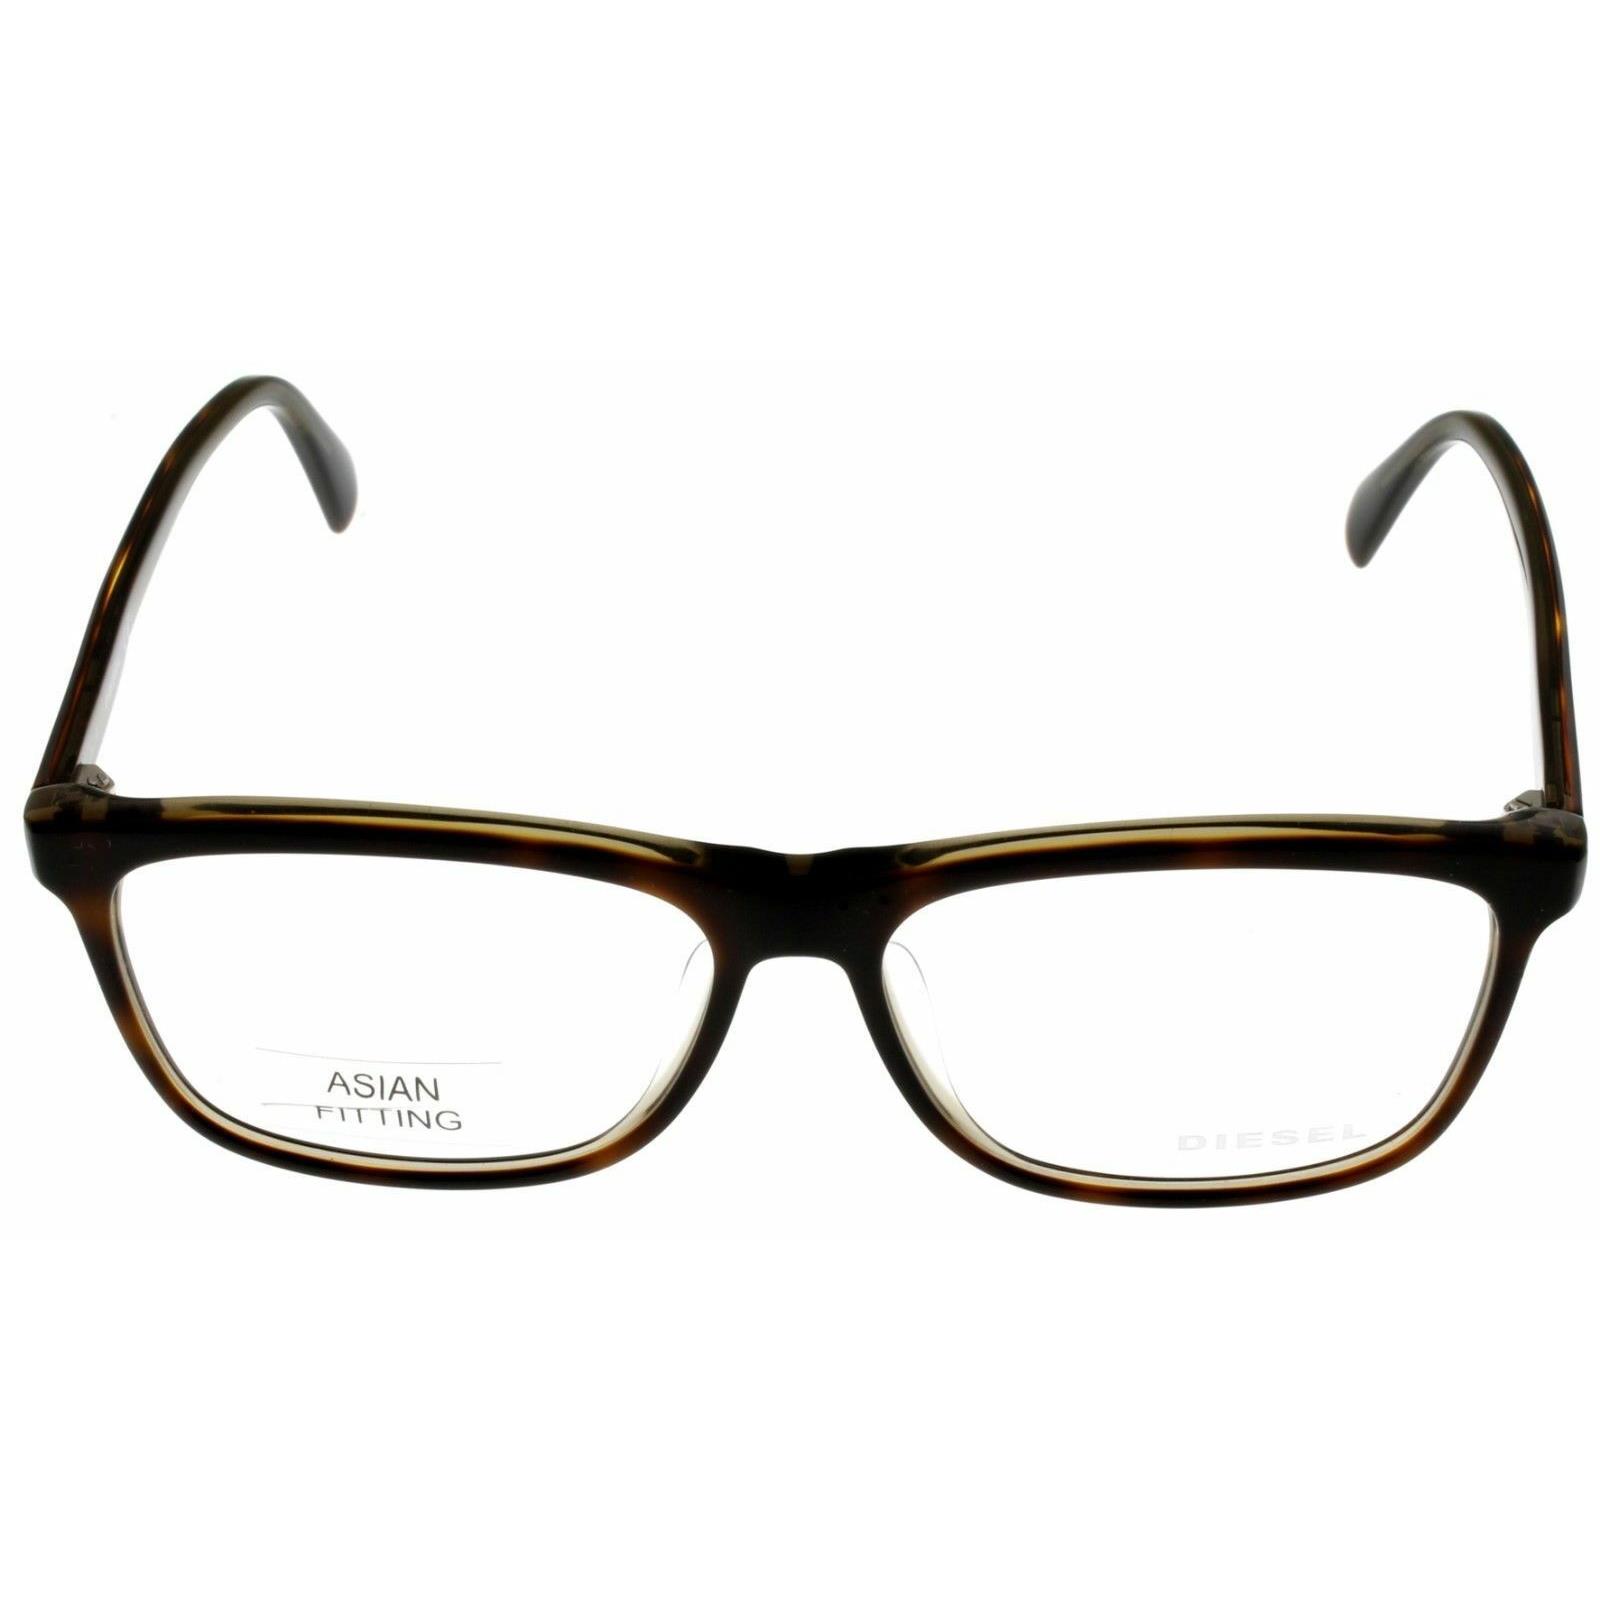 Diesel Eyeglasses Frame Men Brown Tortoise Rectangular DL5183 056